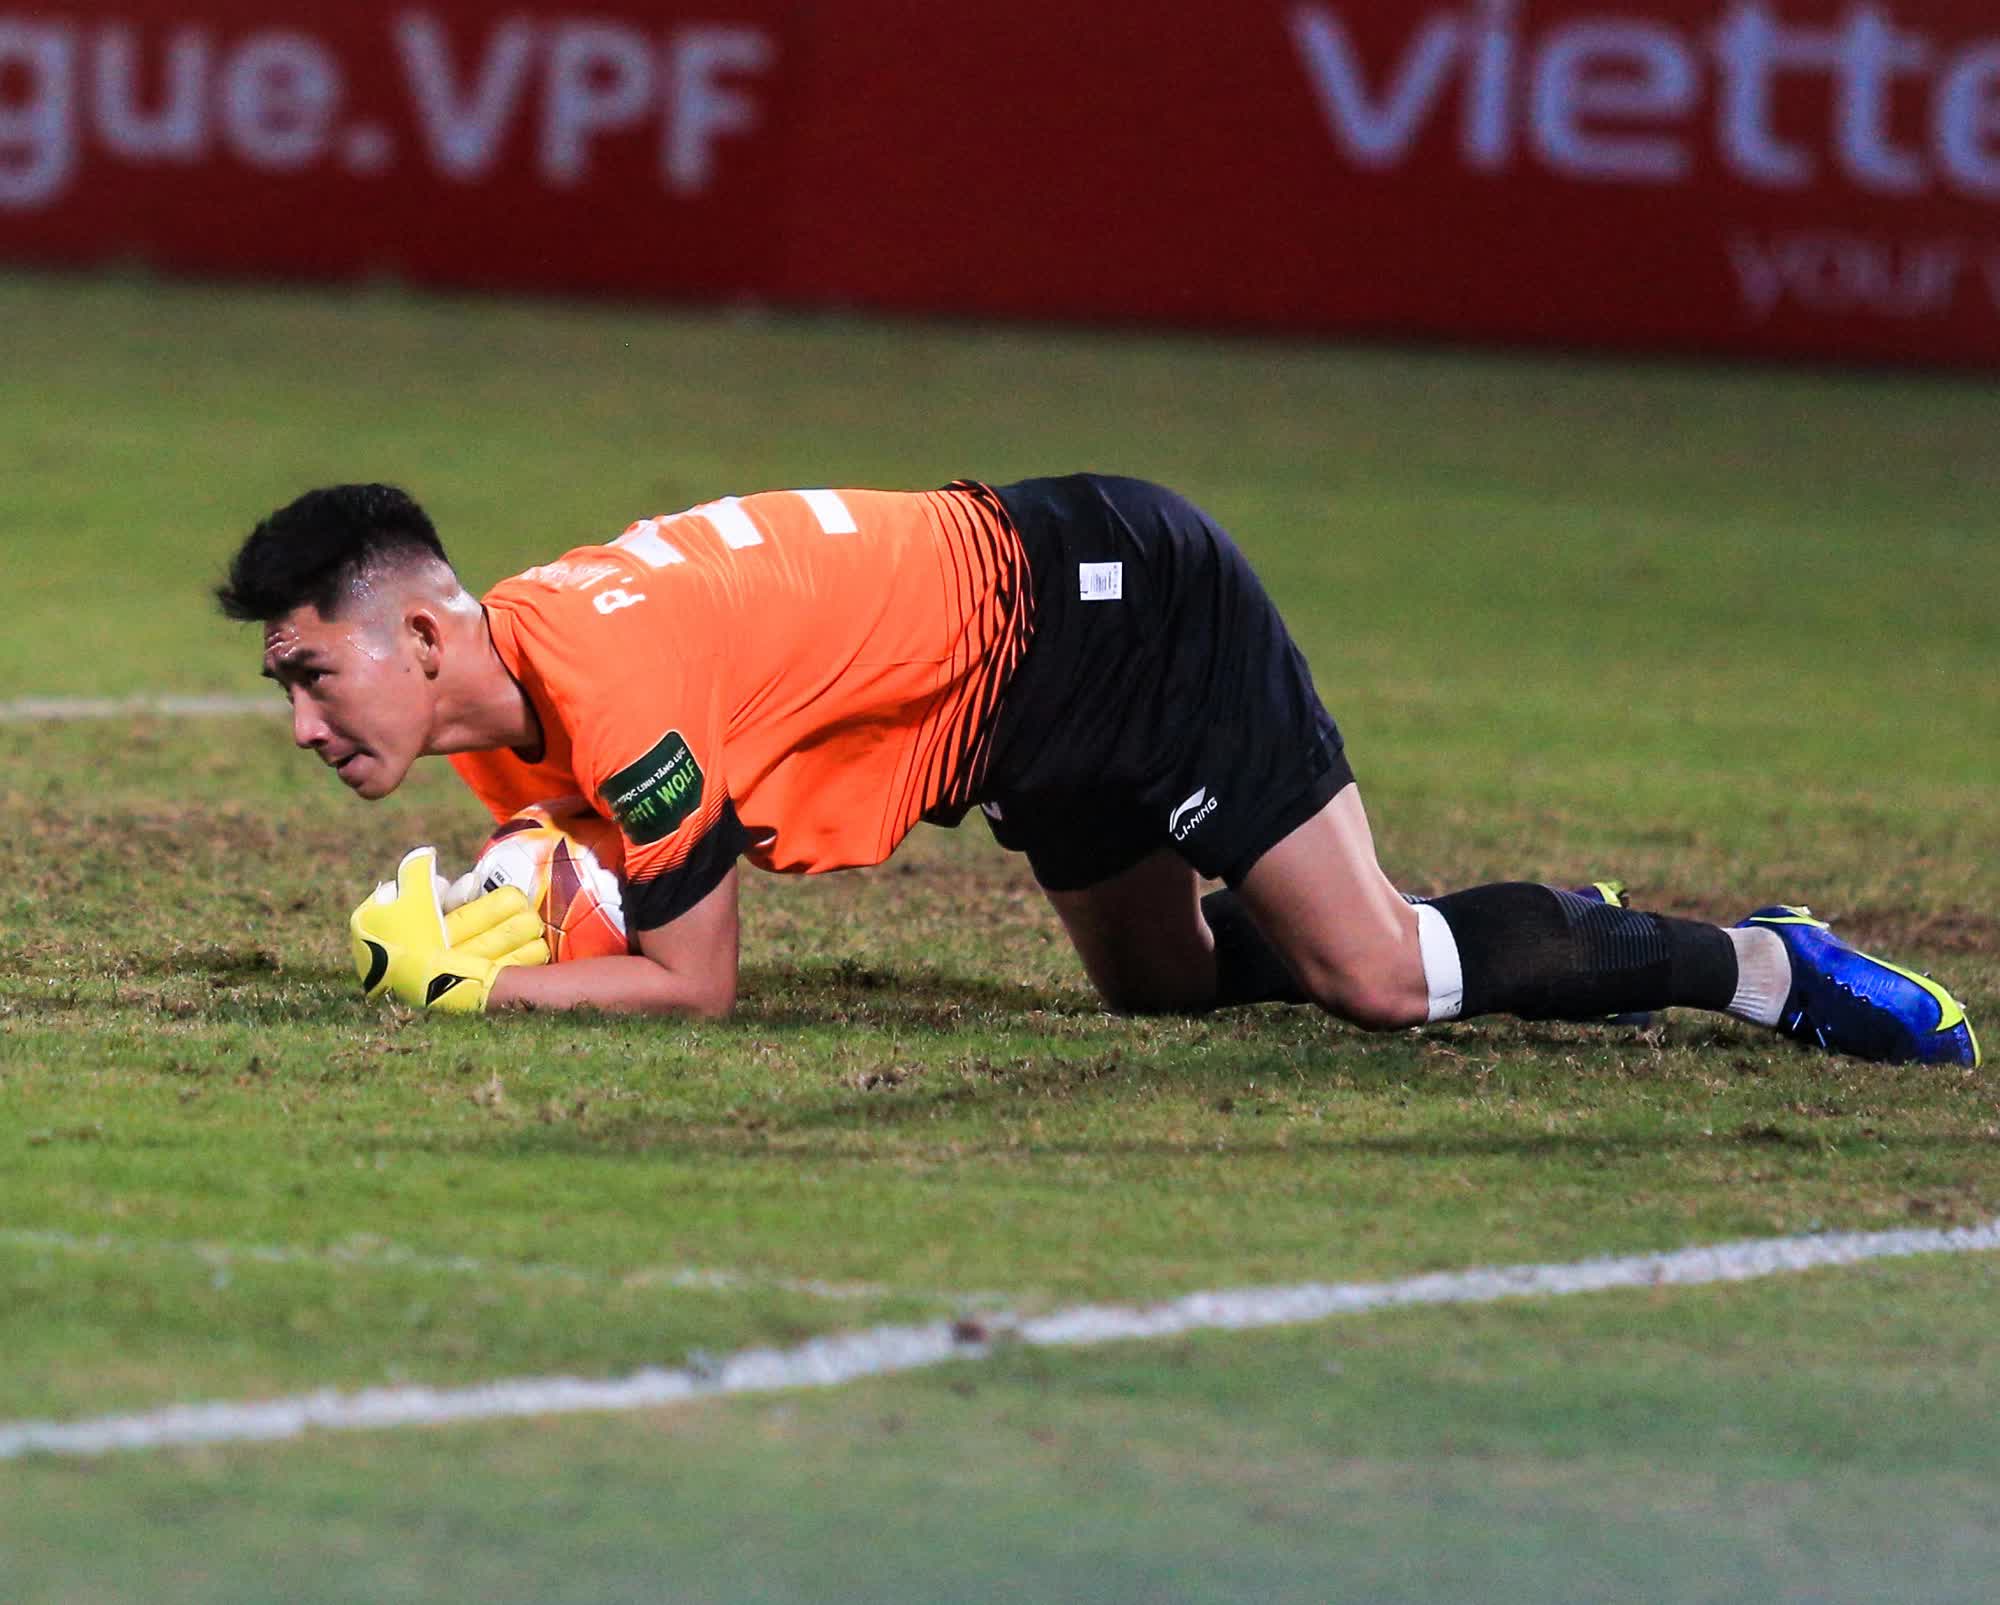 Thủ môn Phạm Văn Phong liên tiếp cản phá bóng, cứu thua cho CLB Viettel - Ảnh 4.